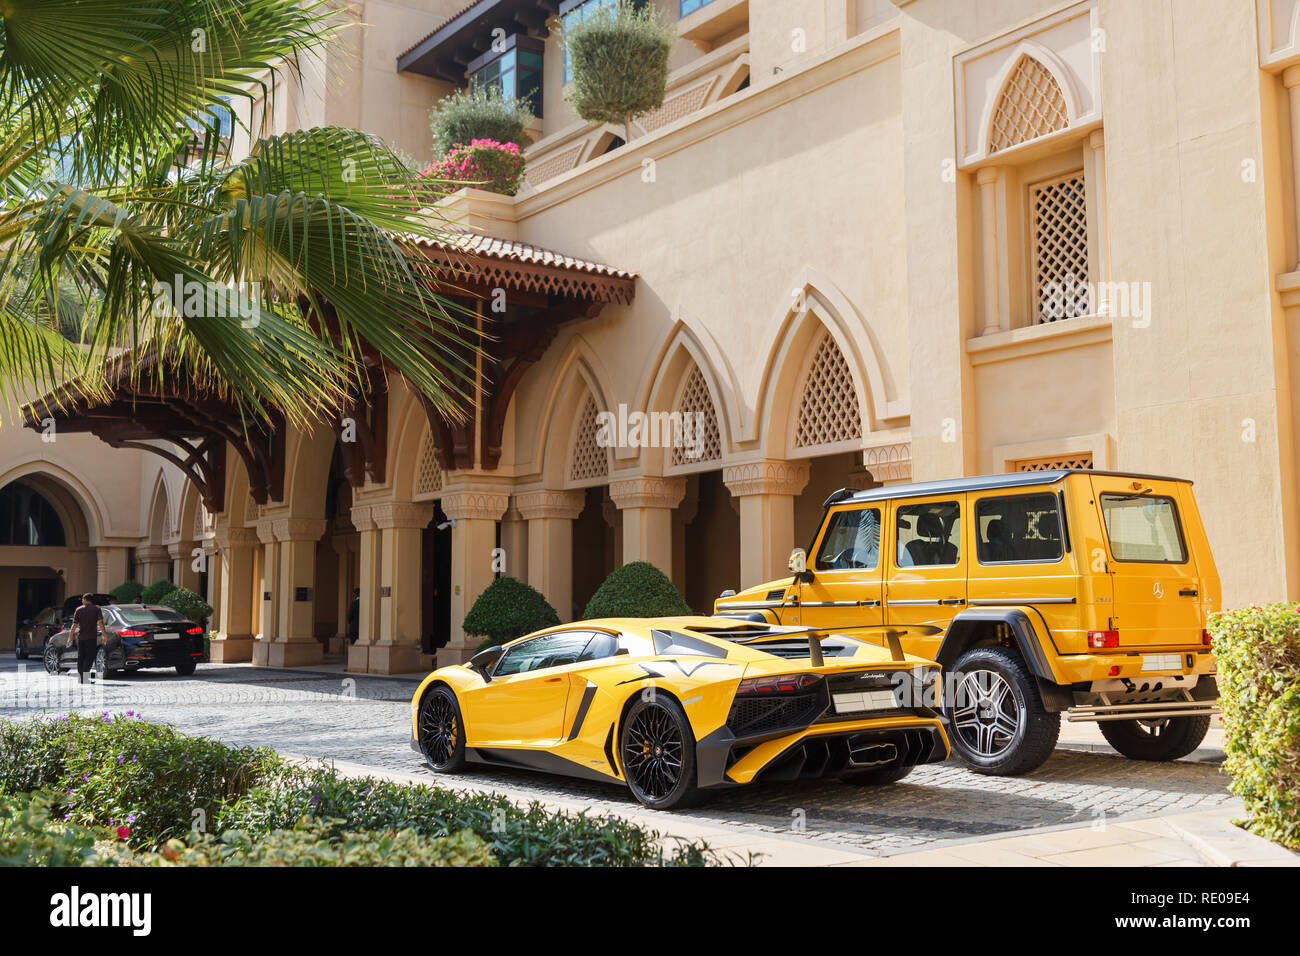 Dubaï, Émirats arabes unis - janvier 08, 2019 : jaune supercar de luxe  Lamborghini Aventador Roadster et Gelandewagen à Dubaï Photo Stock - Alamy